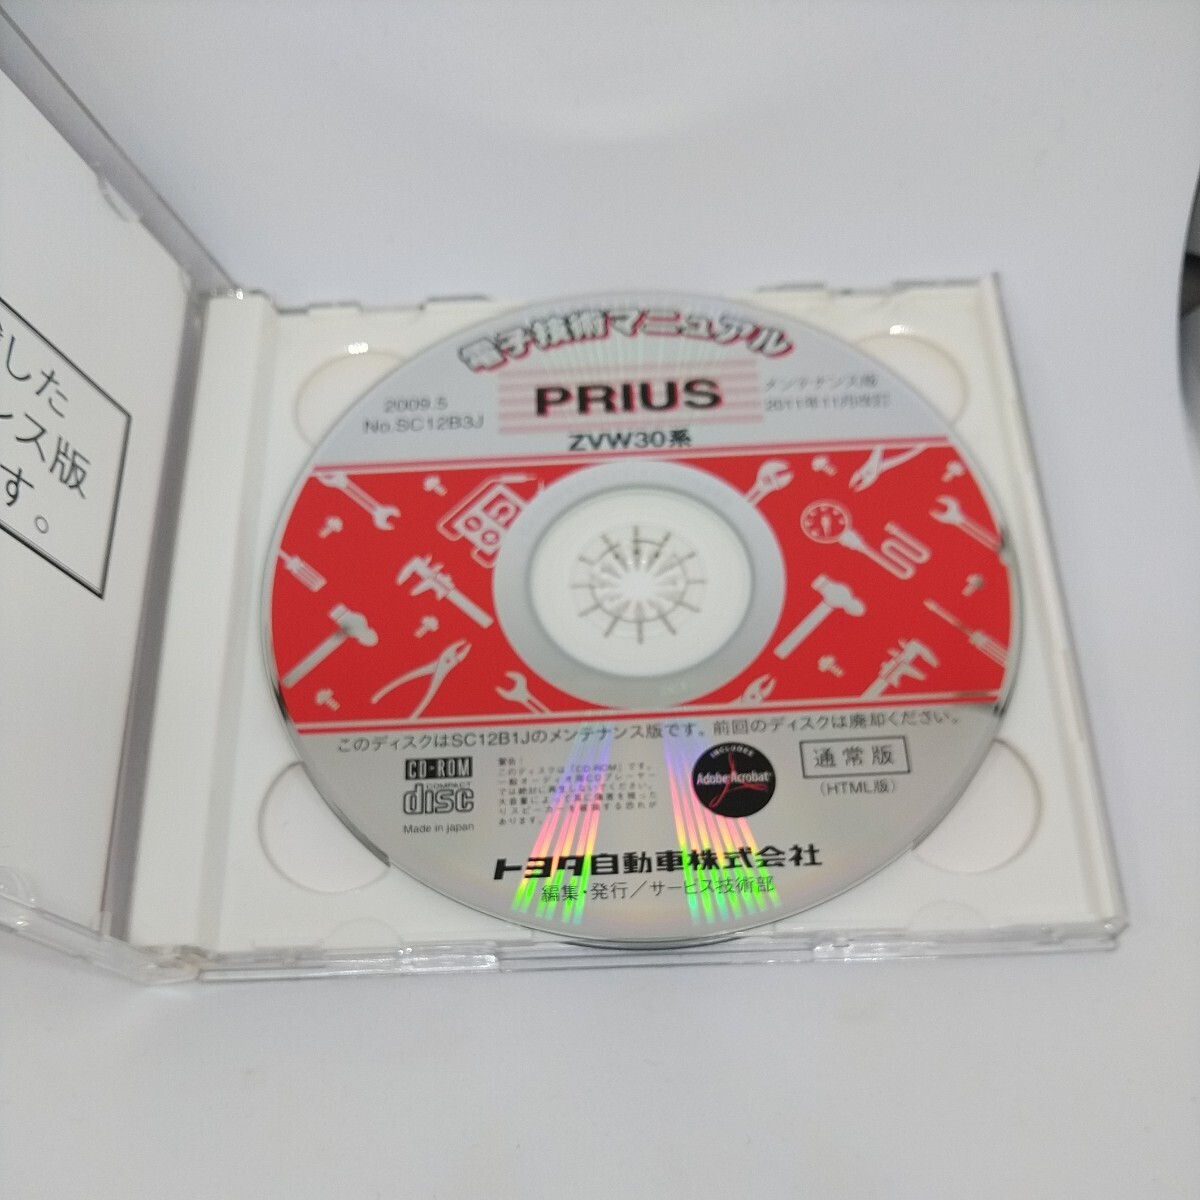 [ бесплатная доставка ] Toyota Prius PRIUS электронный технология manual руководство по обслуживанию книга по ремонту схема проводки инструкция CD-ROM